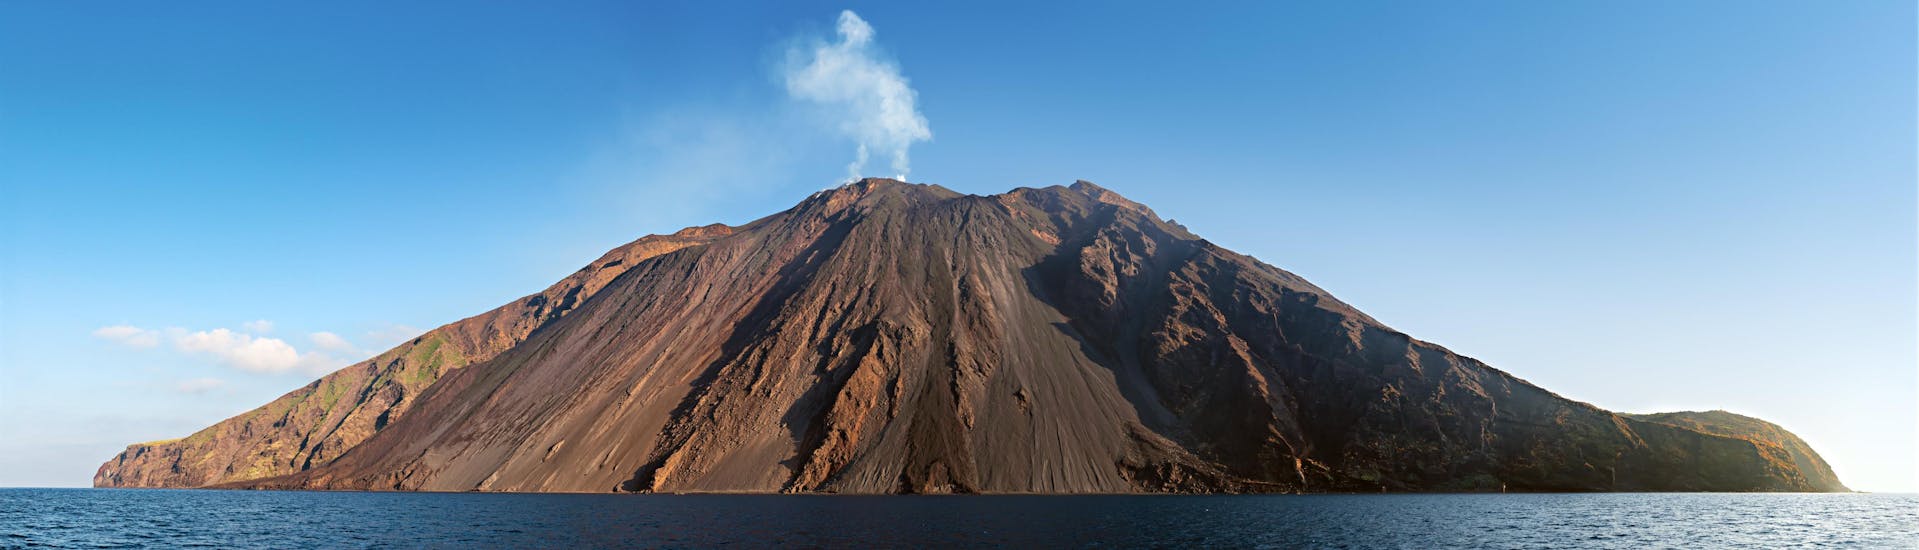 Photo du volcan Stromboli, un site touristique populaire en Sicile.